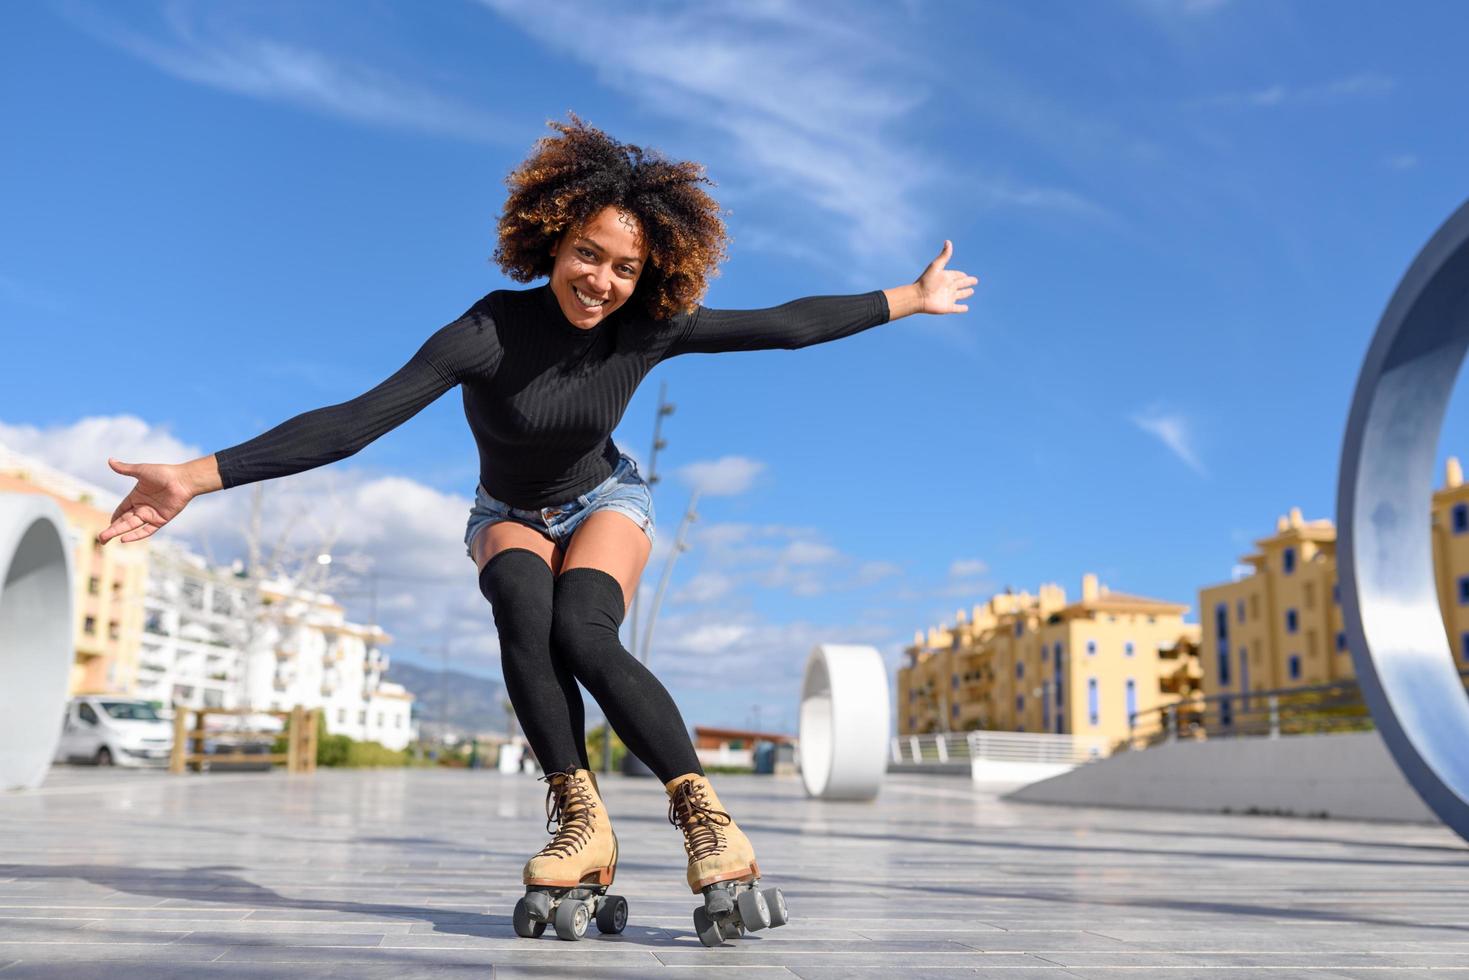 svart kvinna på rullskridskor som åker utomhus på stadsgatan foto